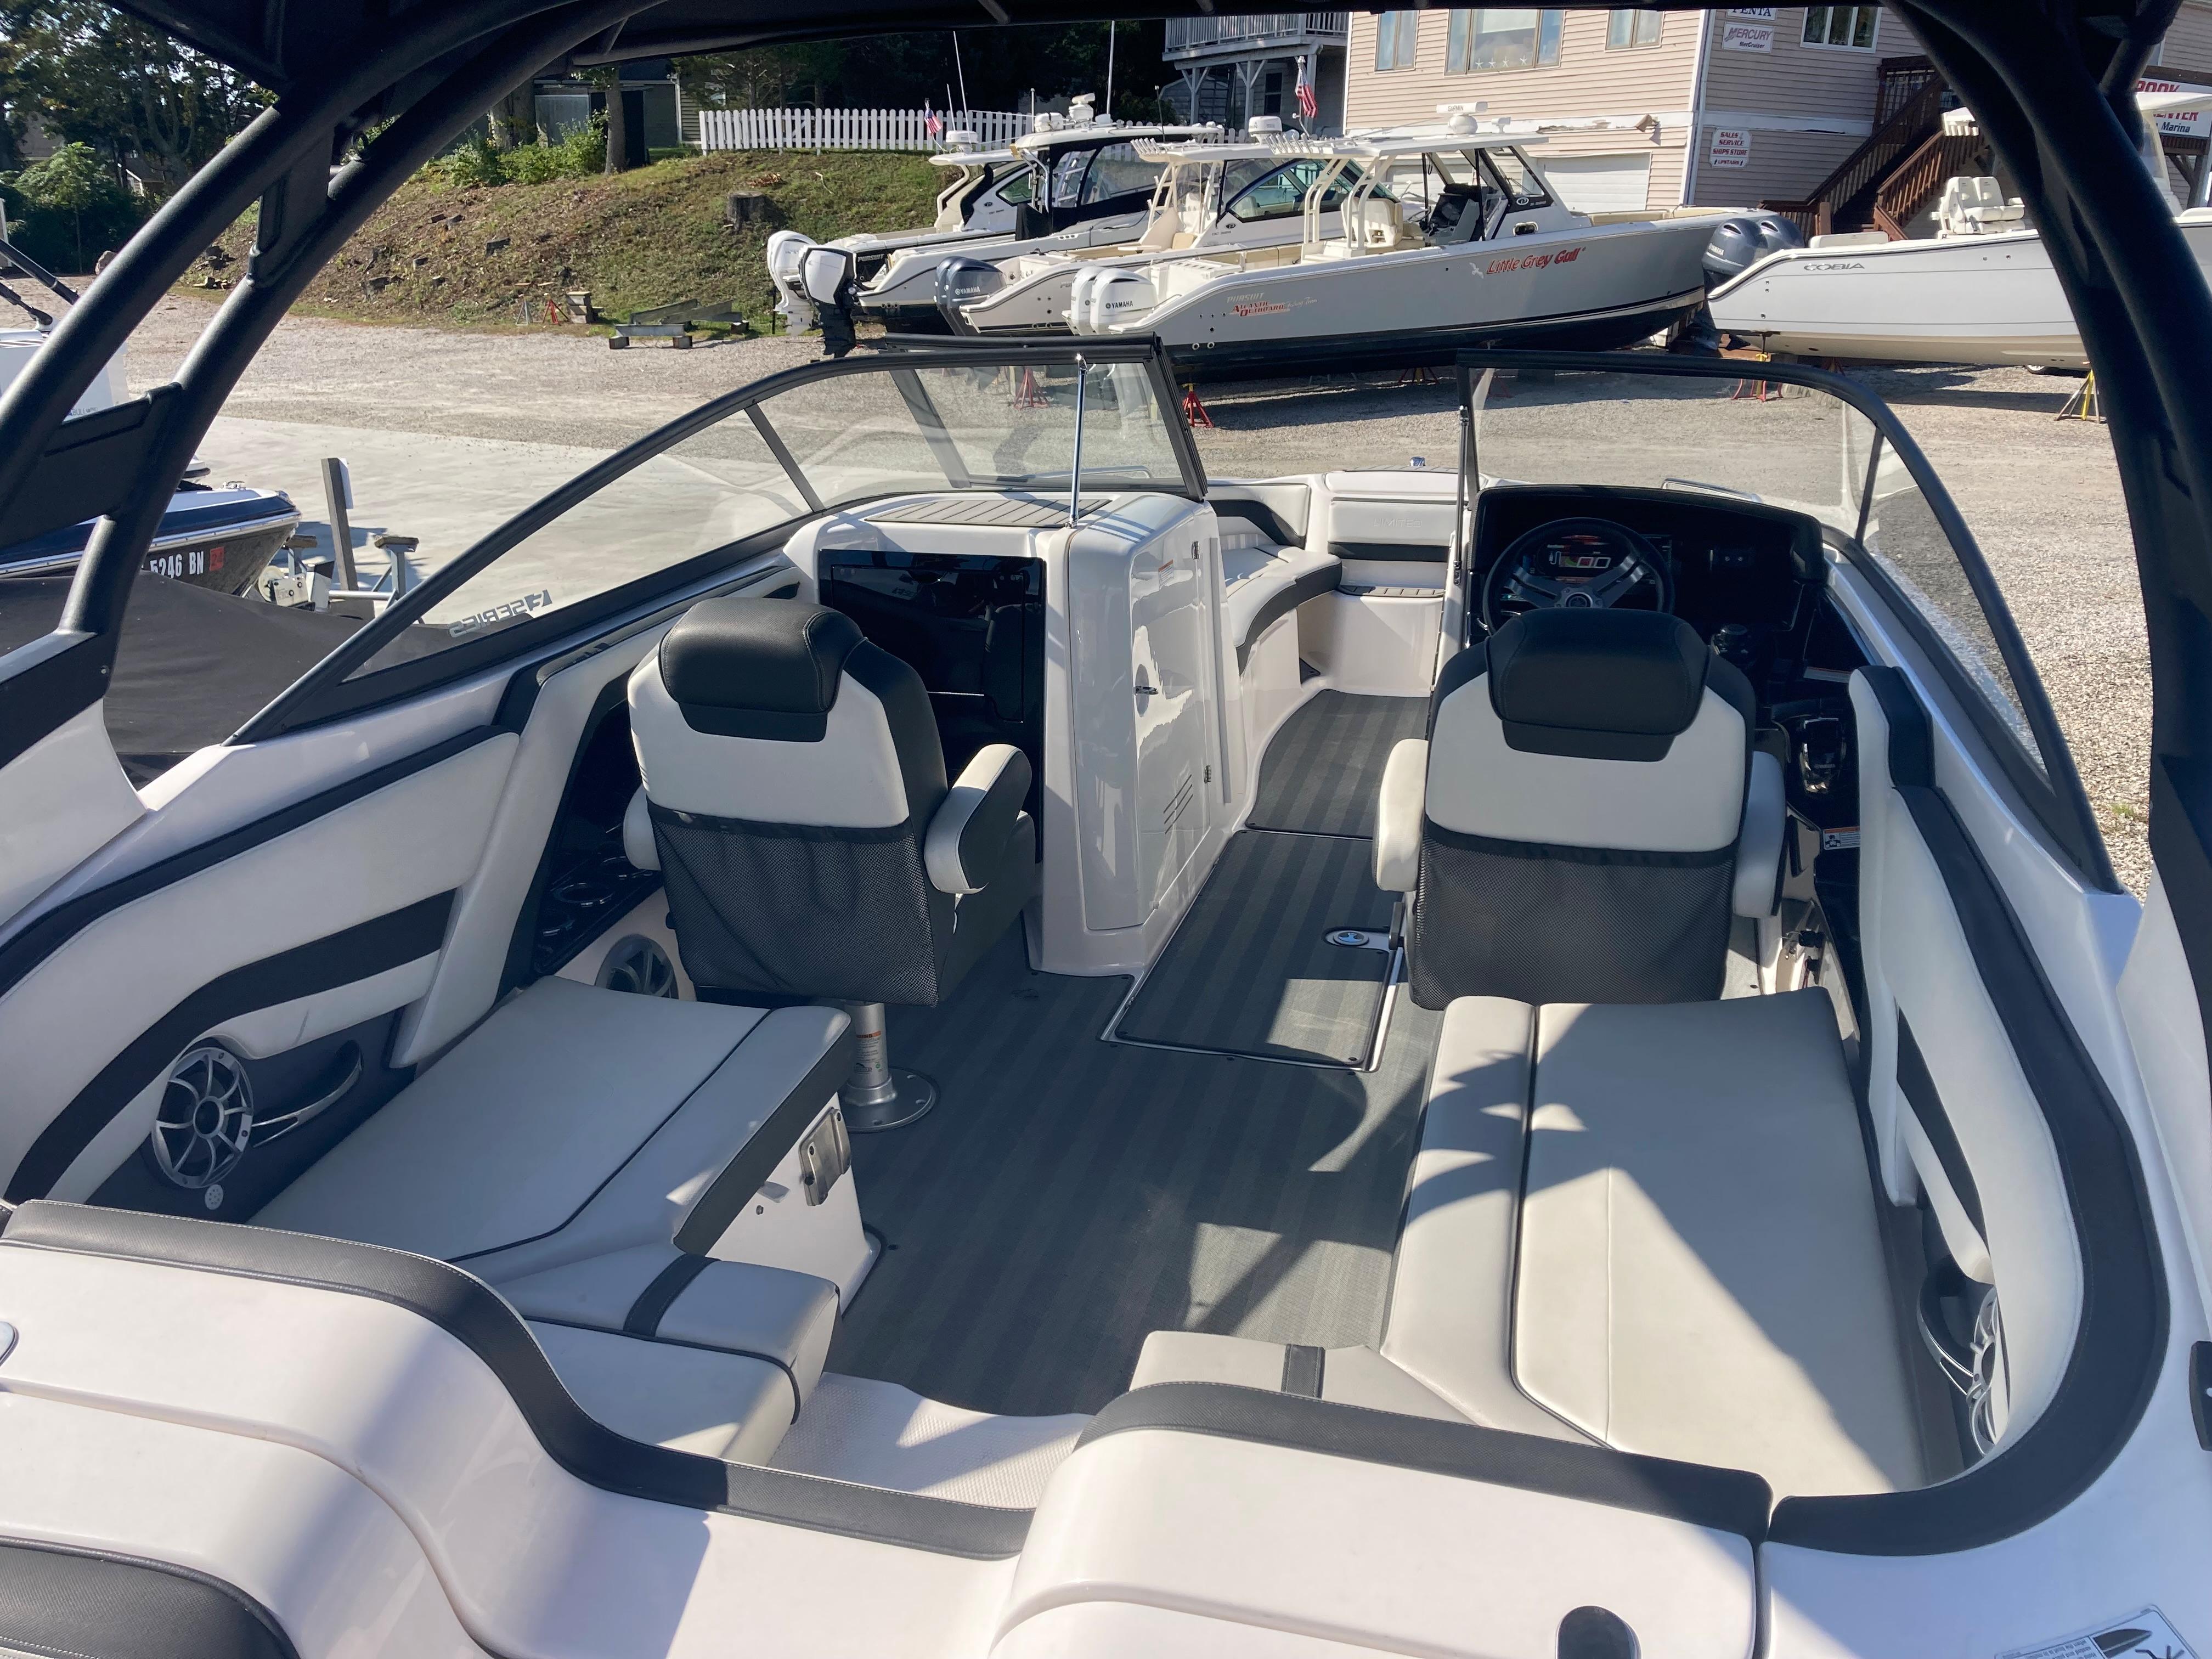 2019 Yamaha Boats 242 Limited S